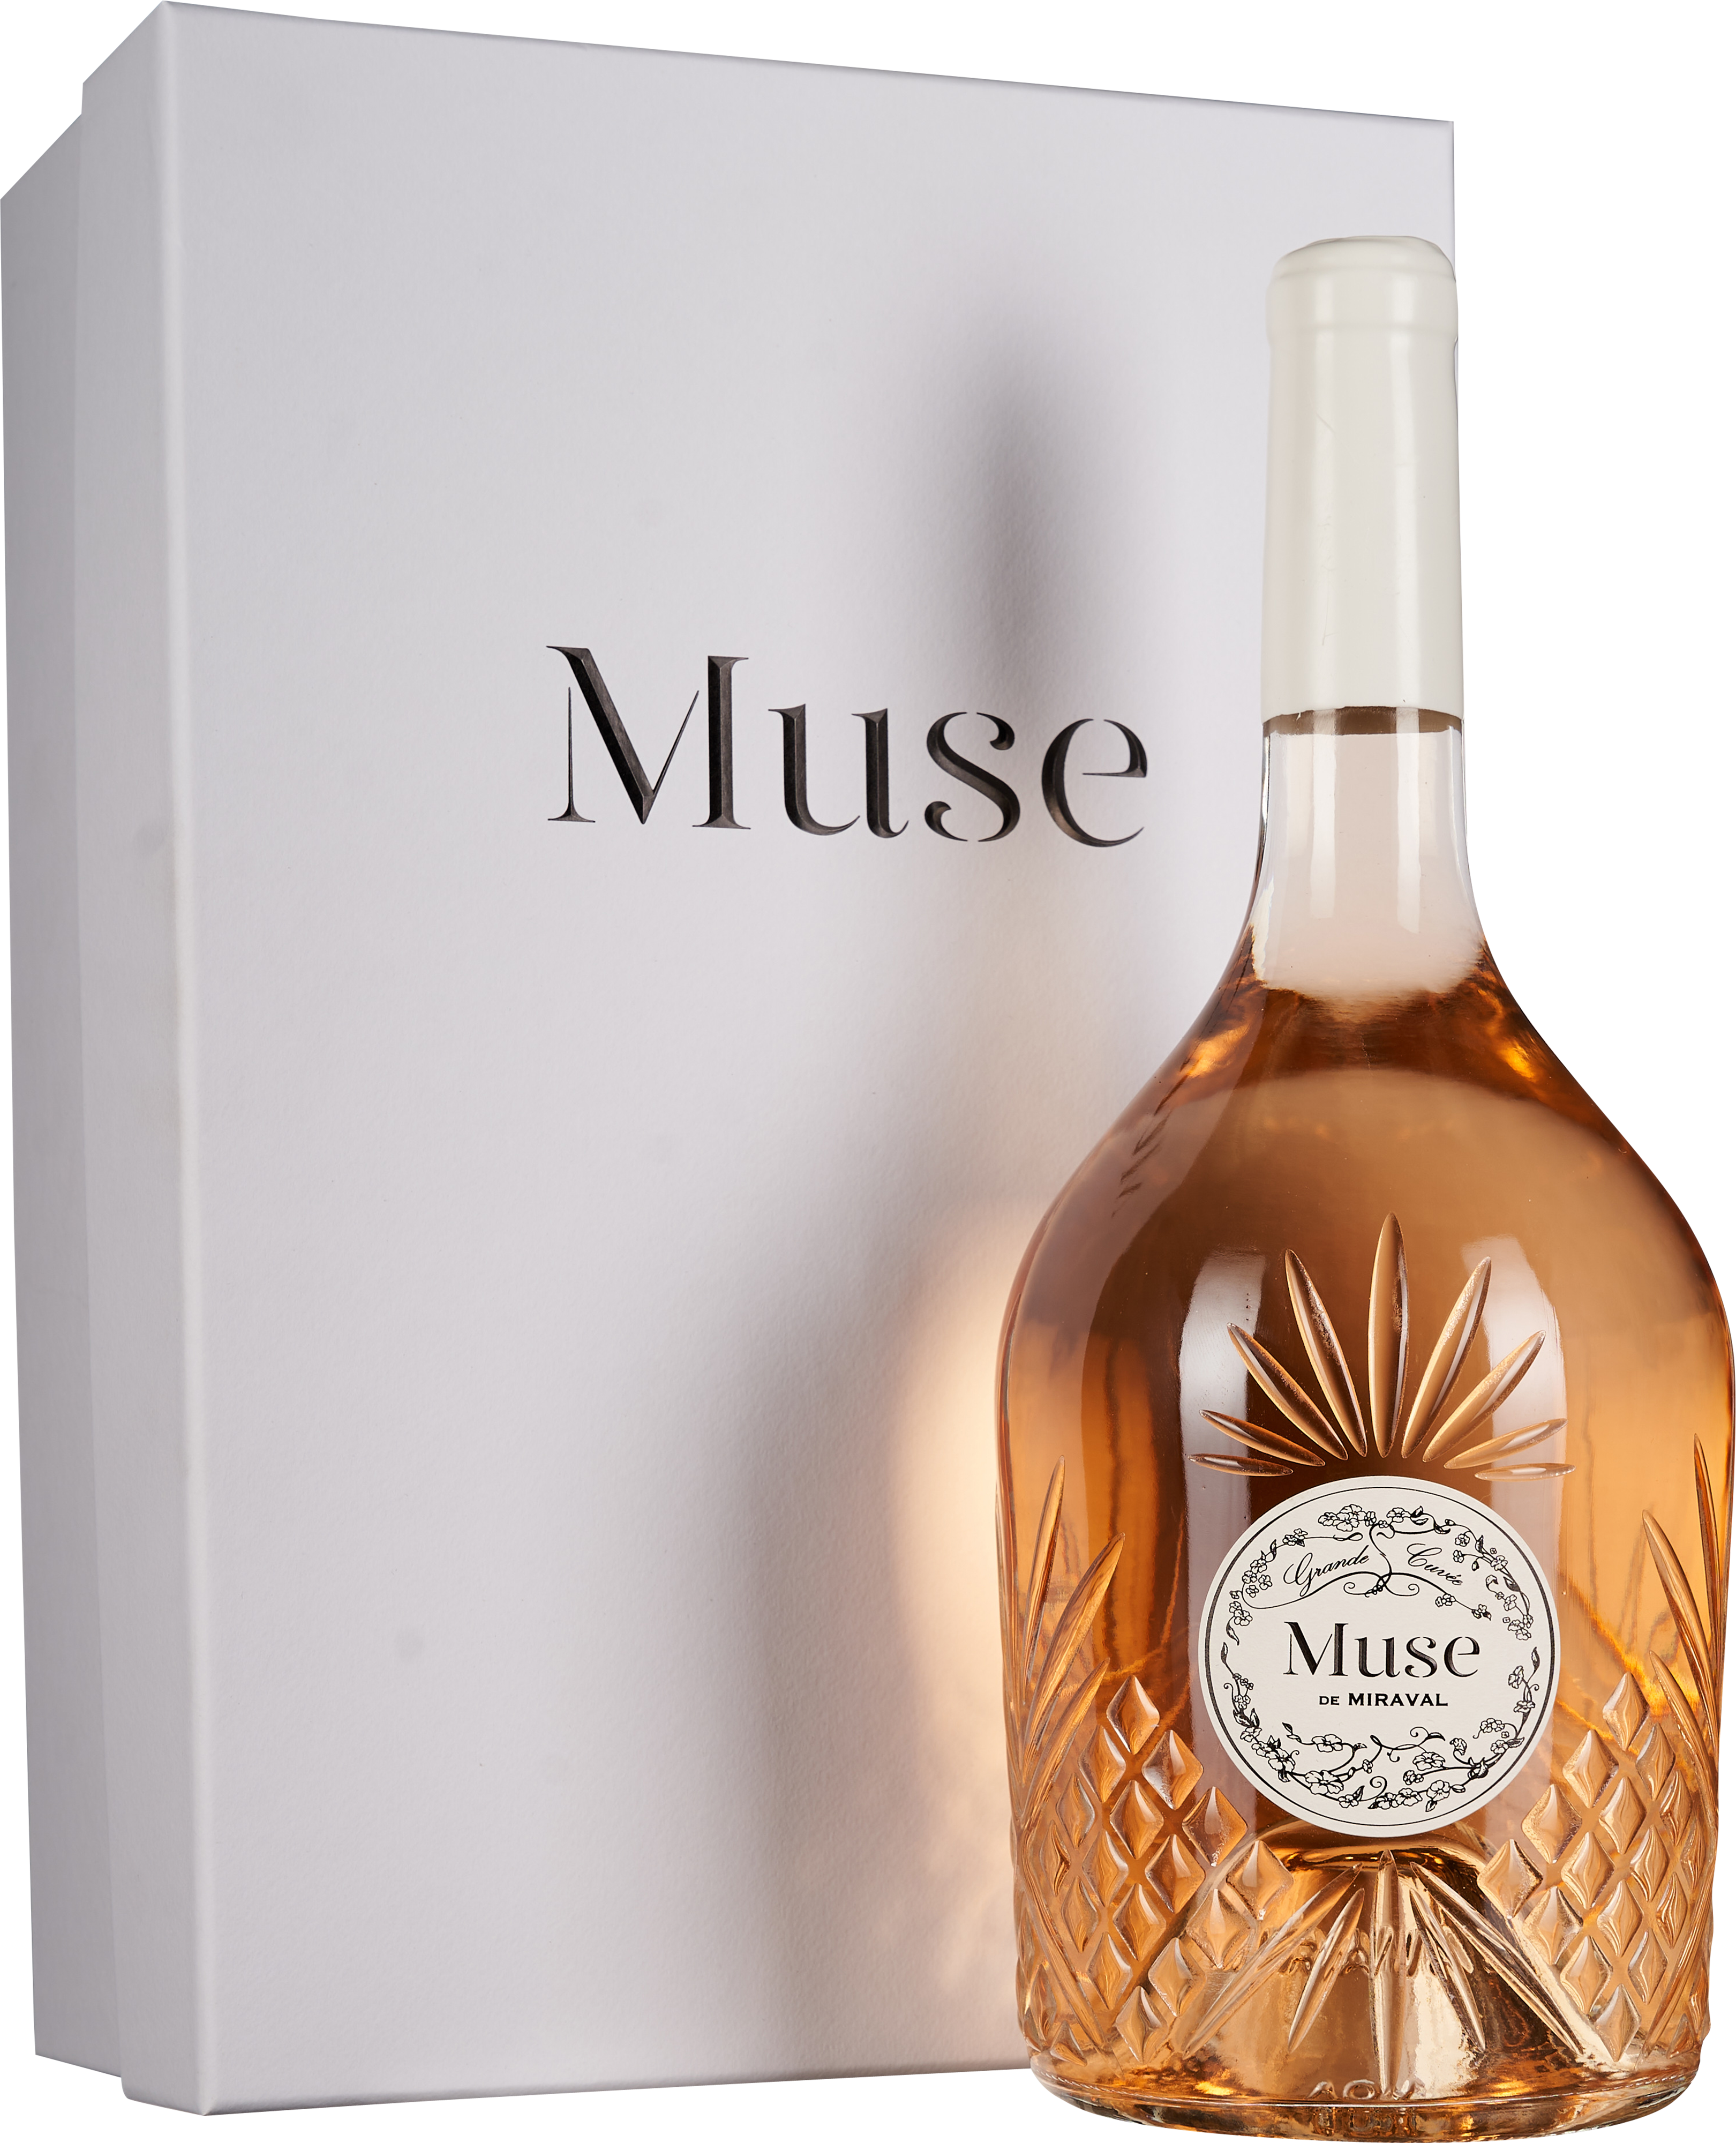 Miraval Muse de Miraval Grande Cuvée Rosé Côtes de Provence AOC Magnum